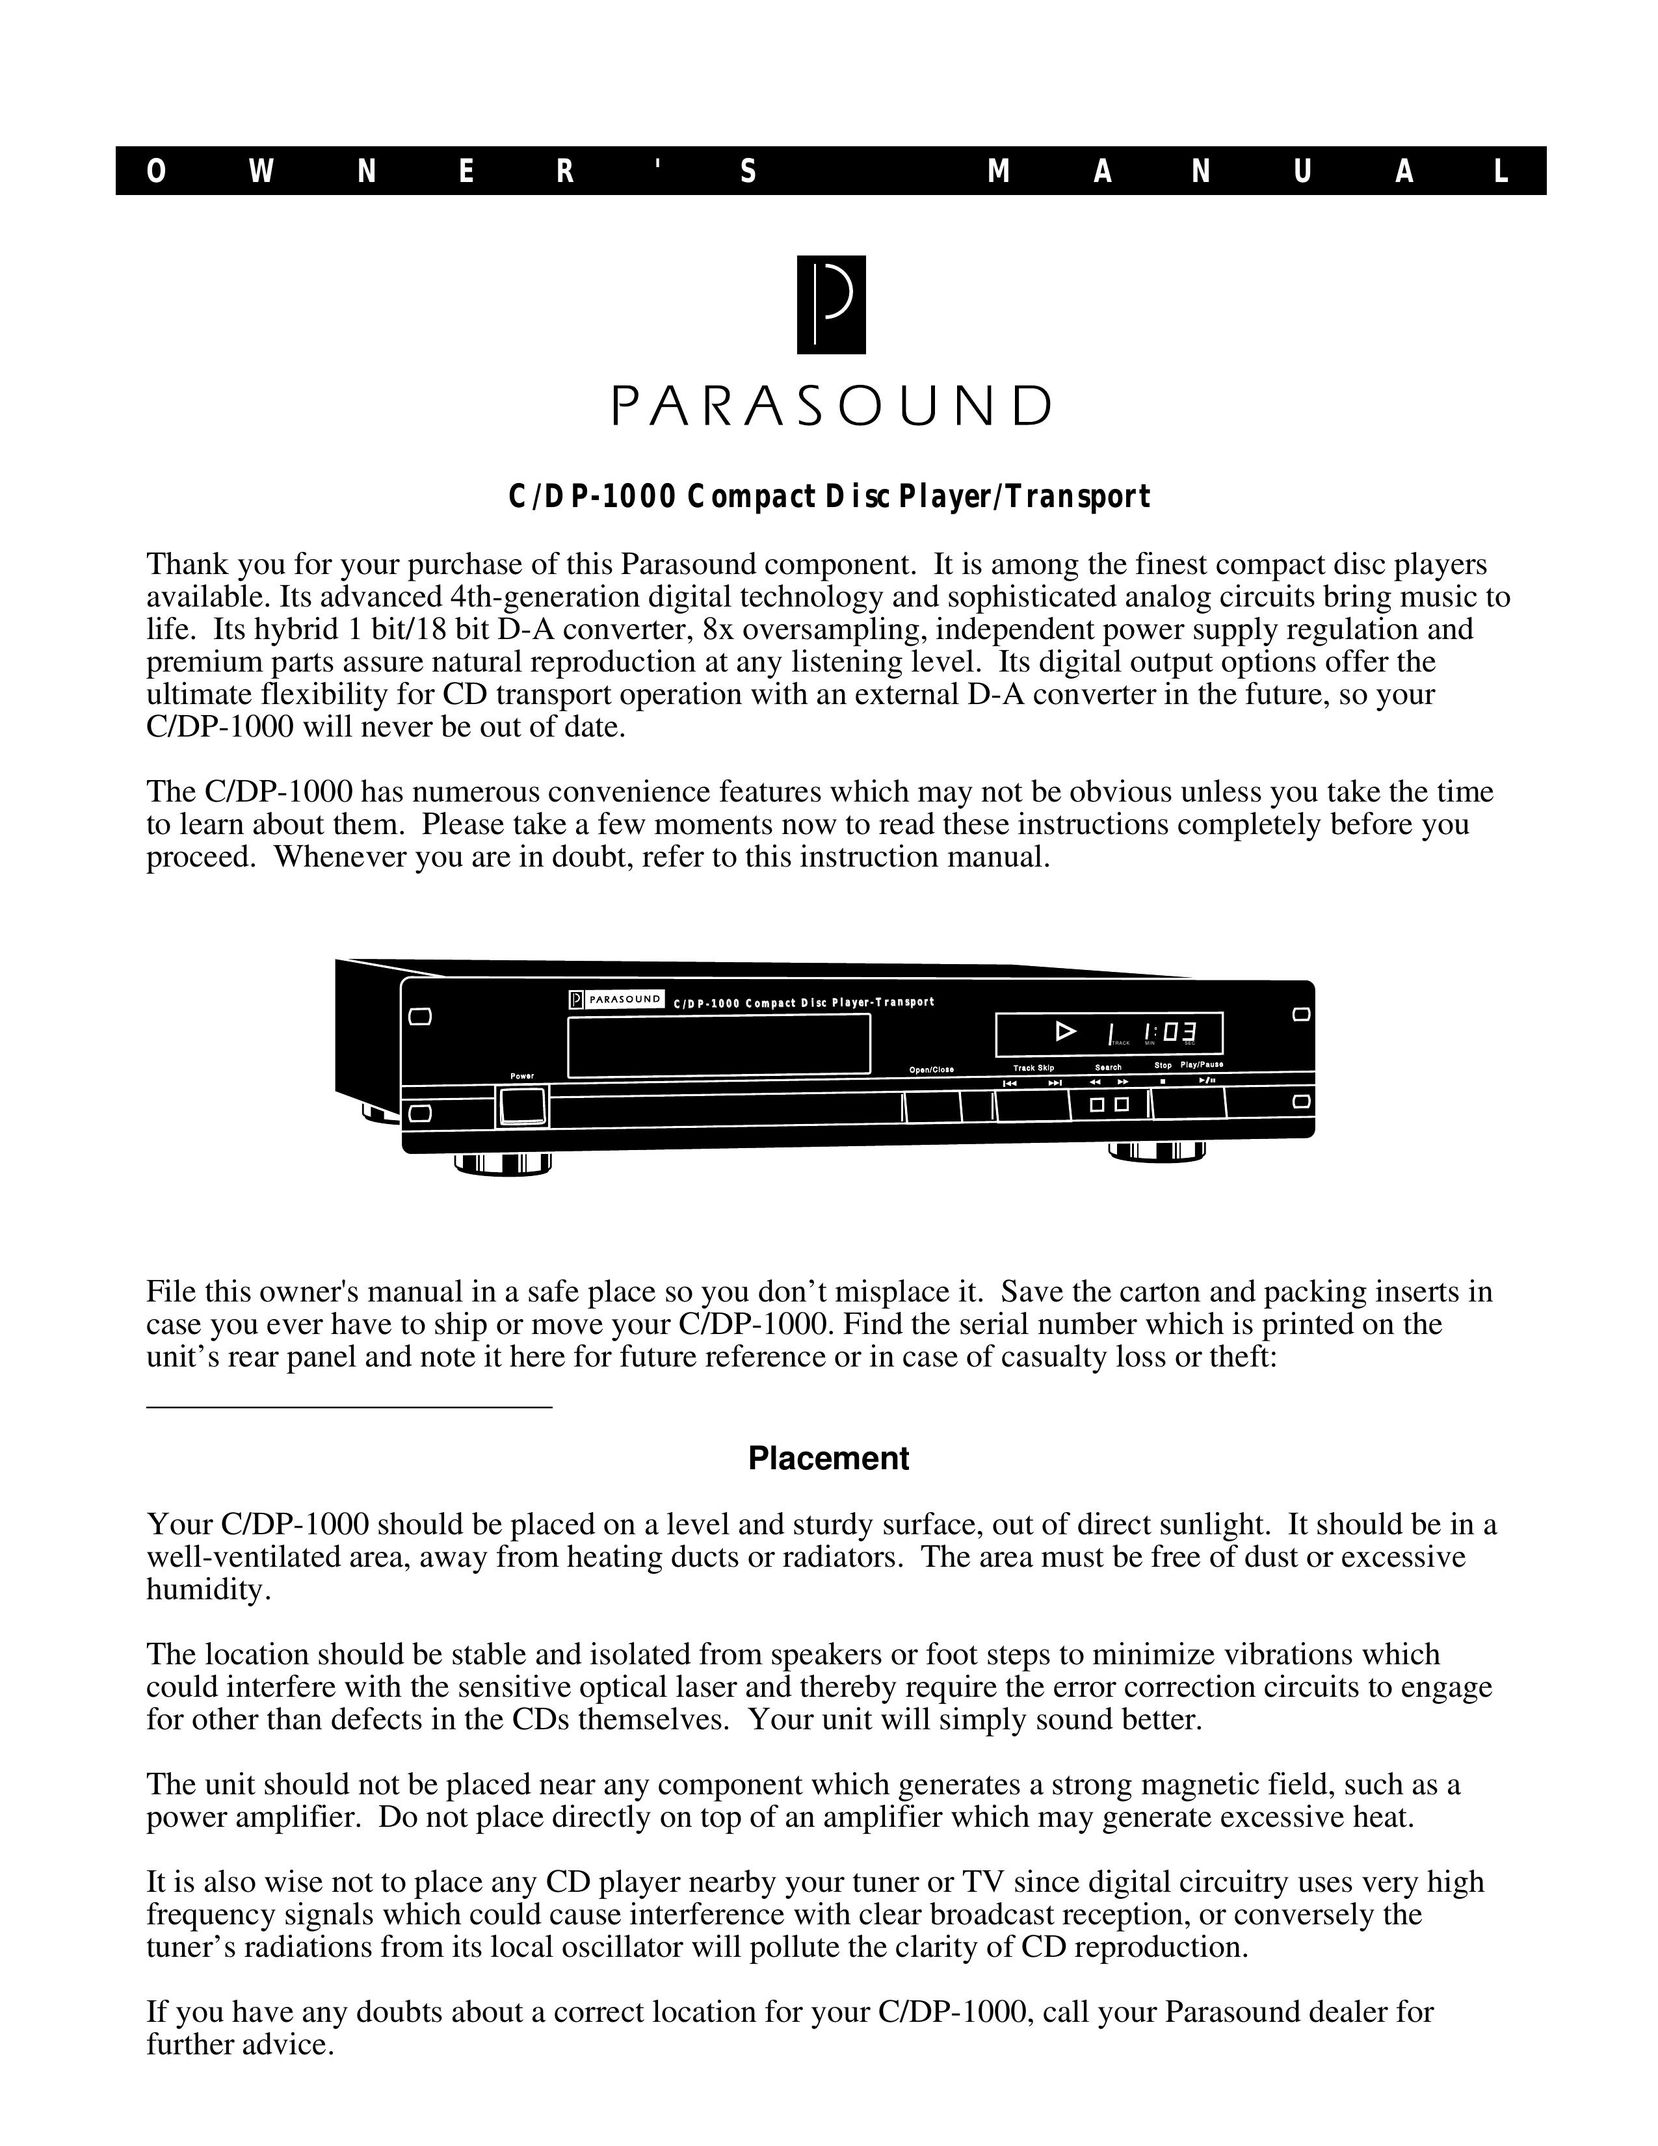 Parasound C/DP-1000 CD Player User Manual